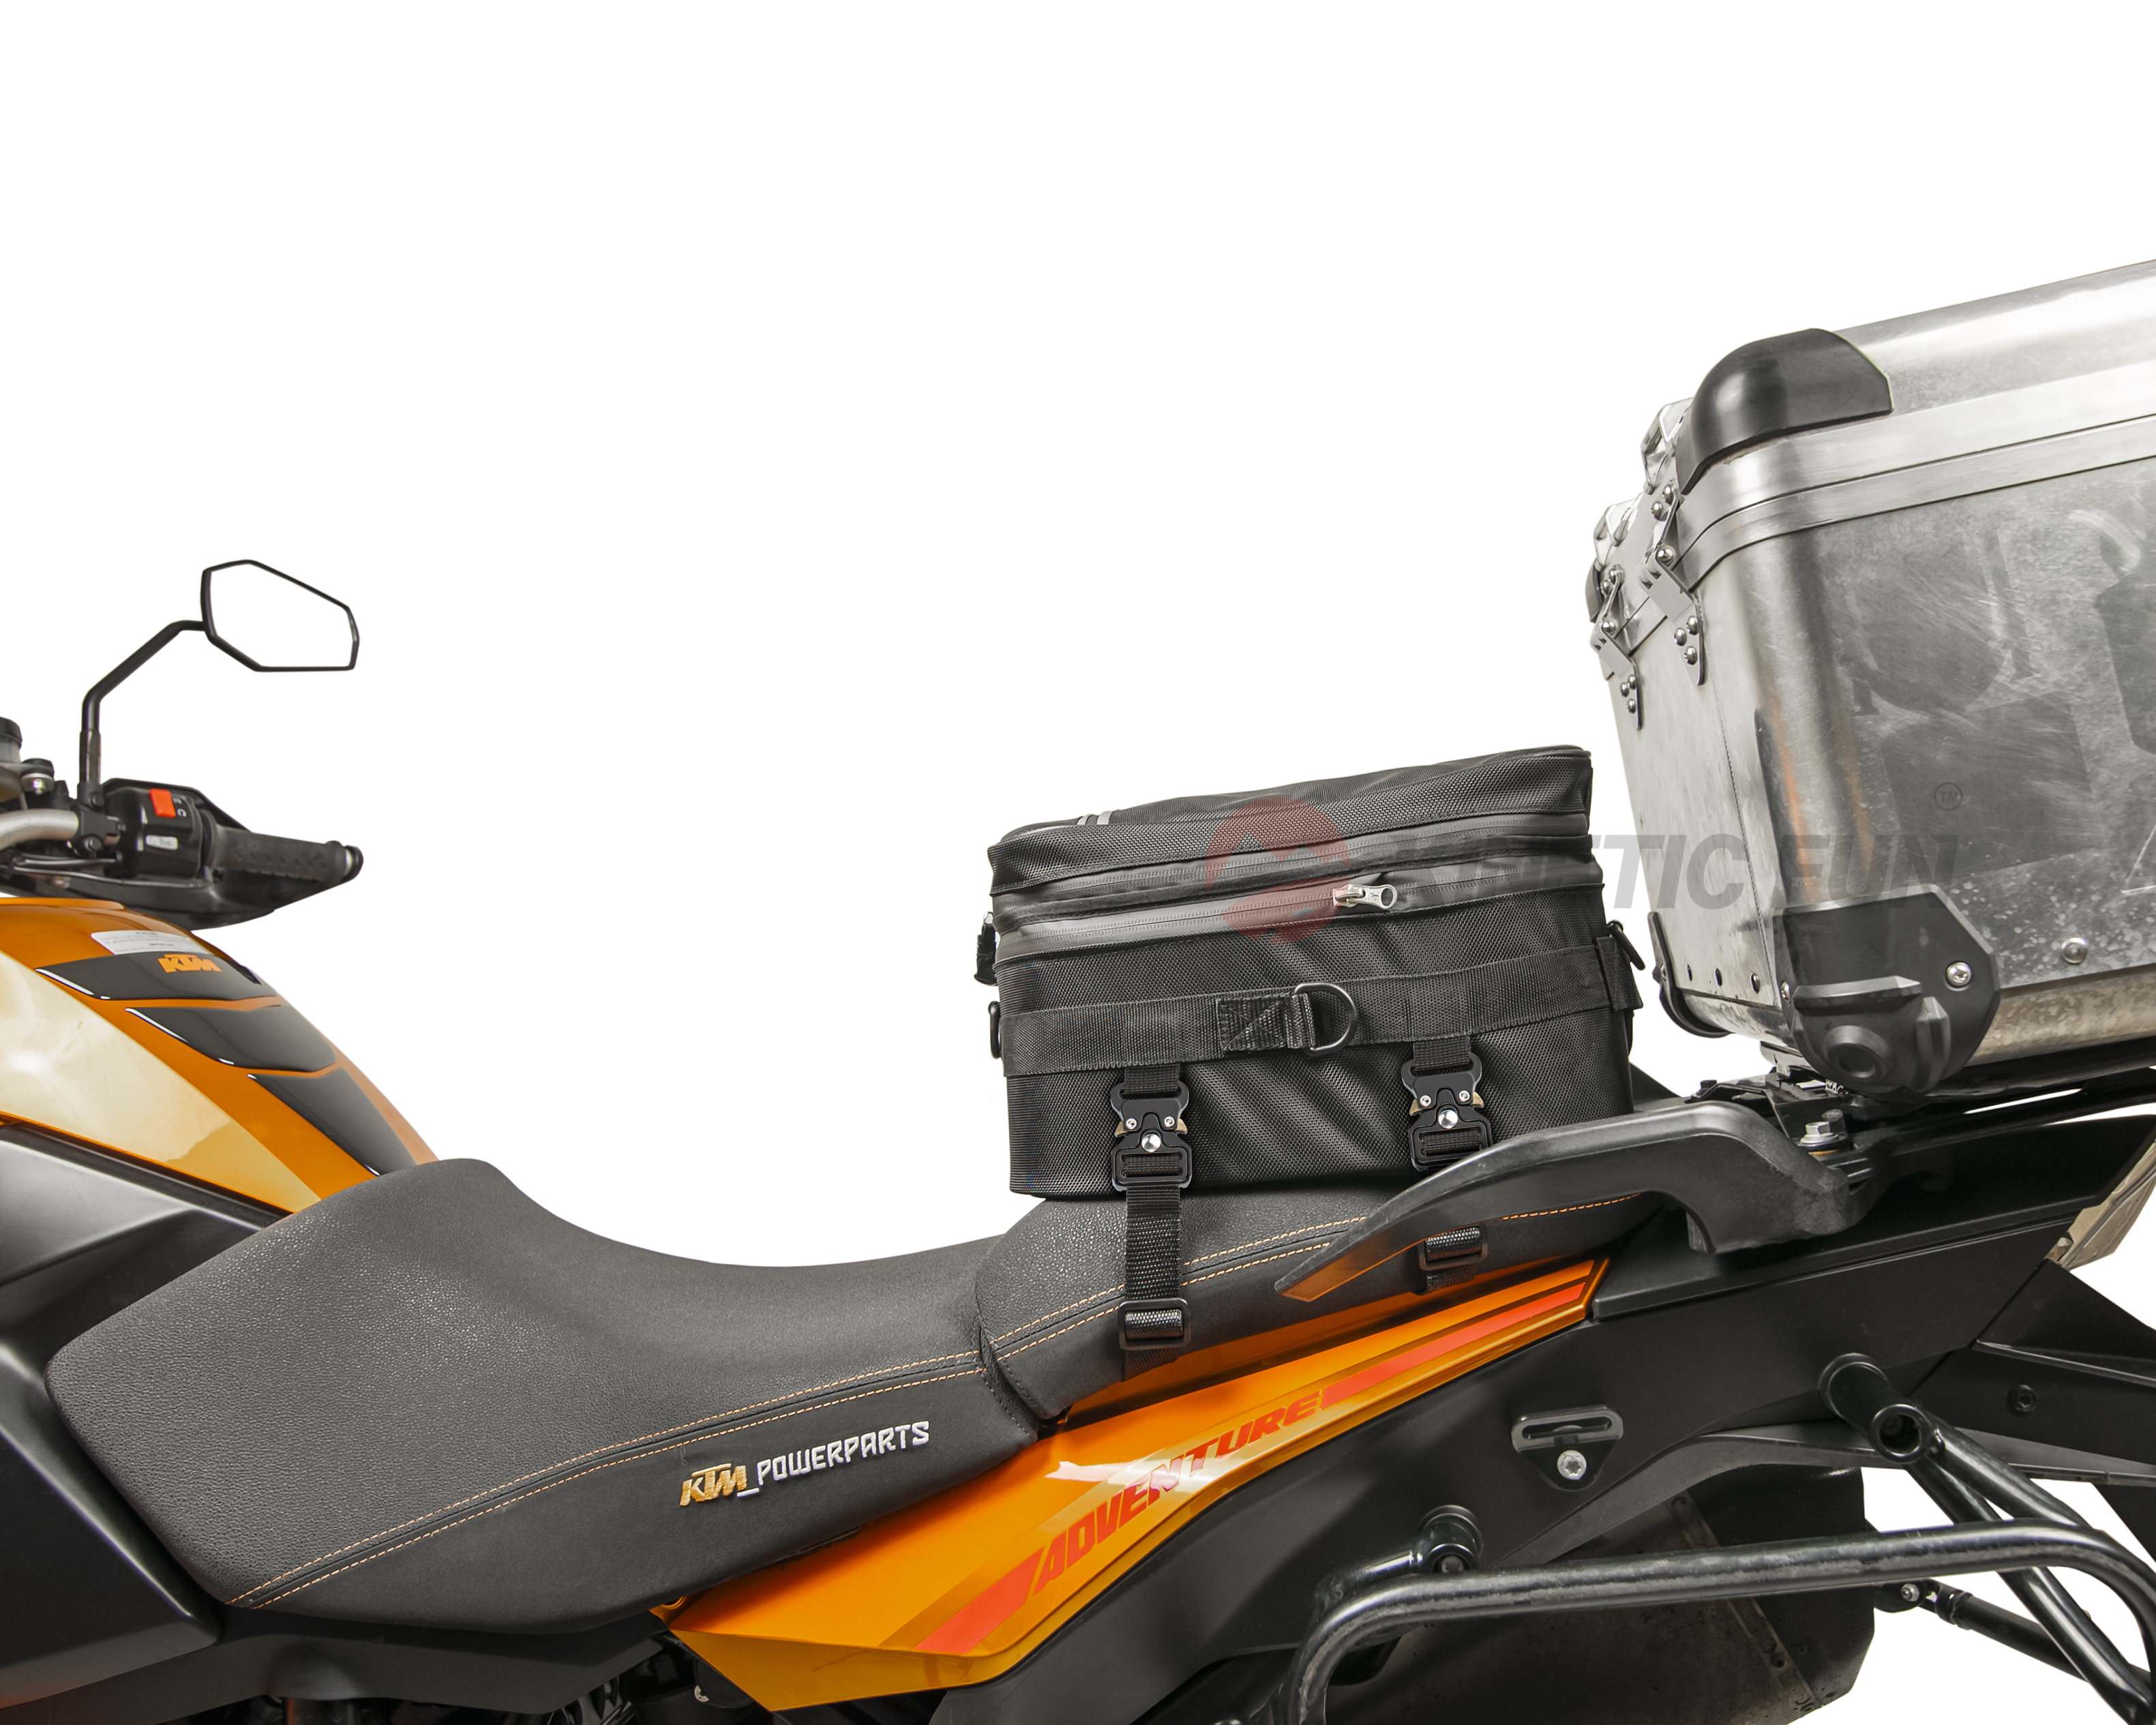 Сумка для мотоцикла Moto Guzzi седельная - Touring, объём 12-20 литров